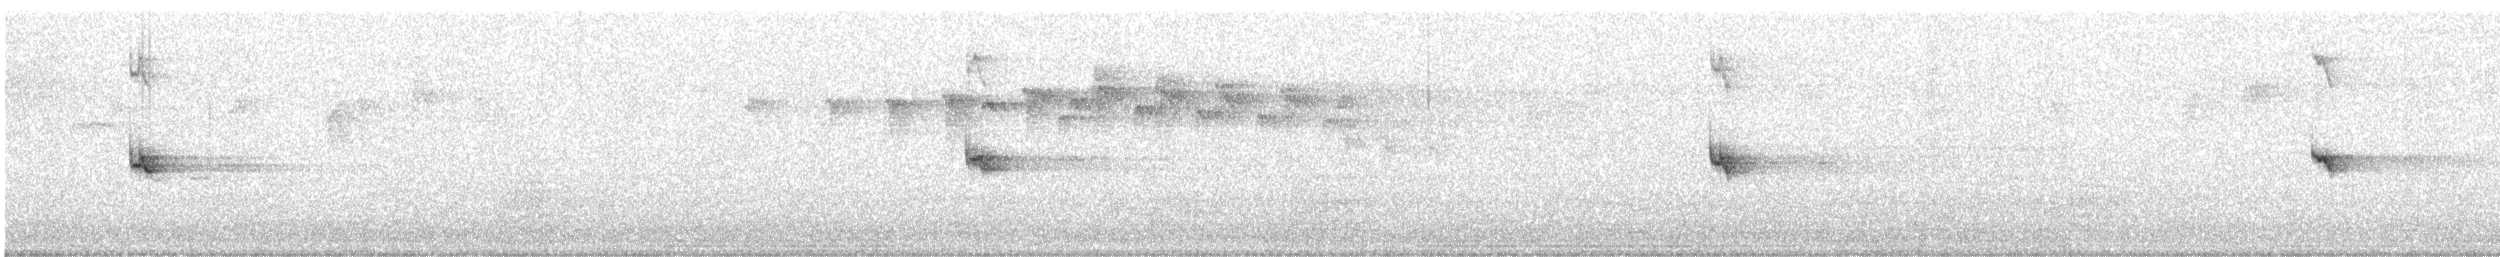 Ak Gerdanlı Tırmaşık [leucophaea grubu] - ML619124667